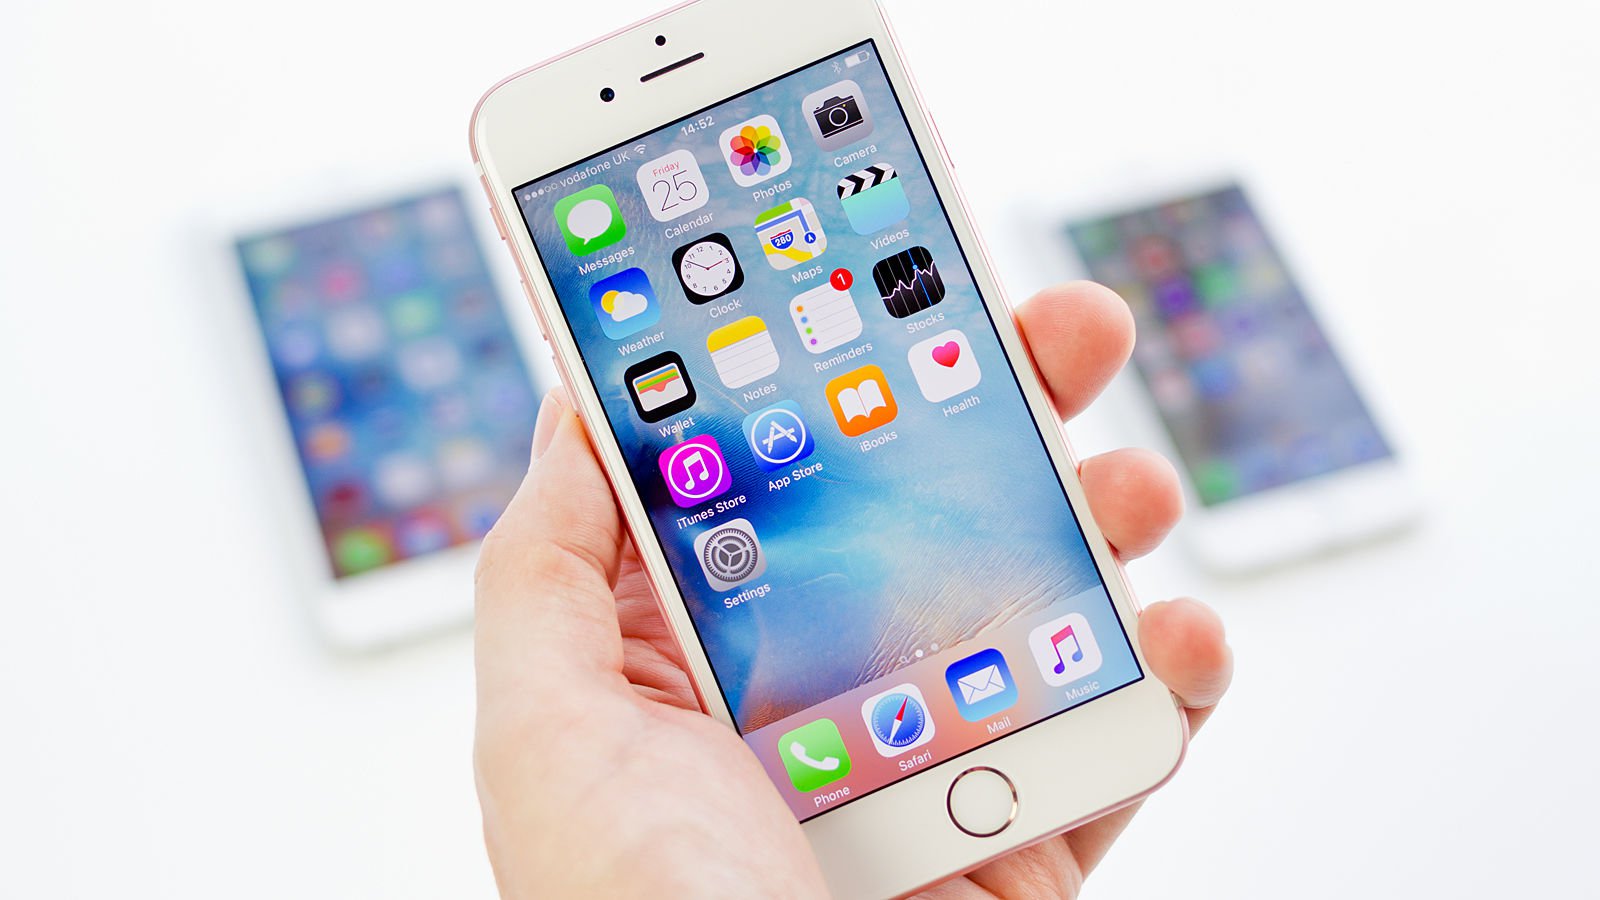 Apple lança iOS 9.2 com várias novidades e correções de bugs